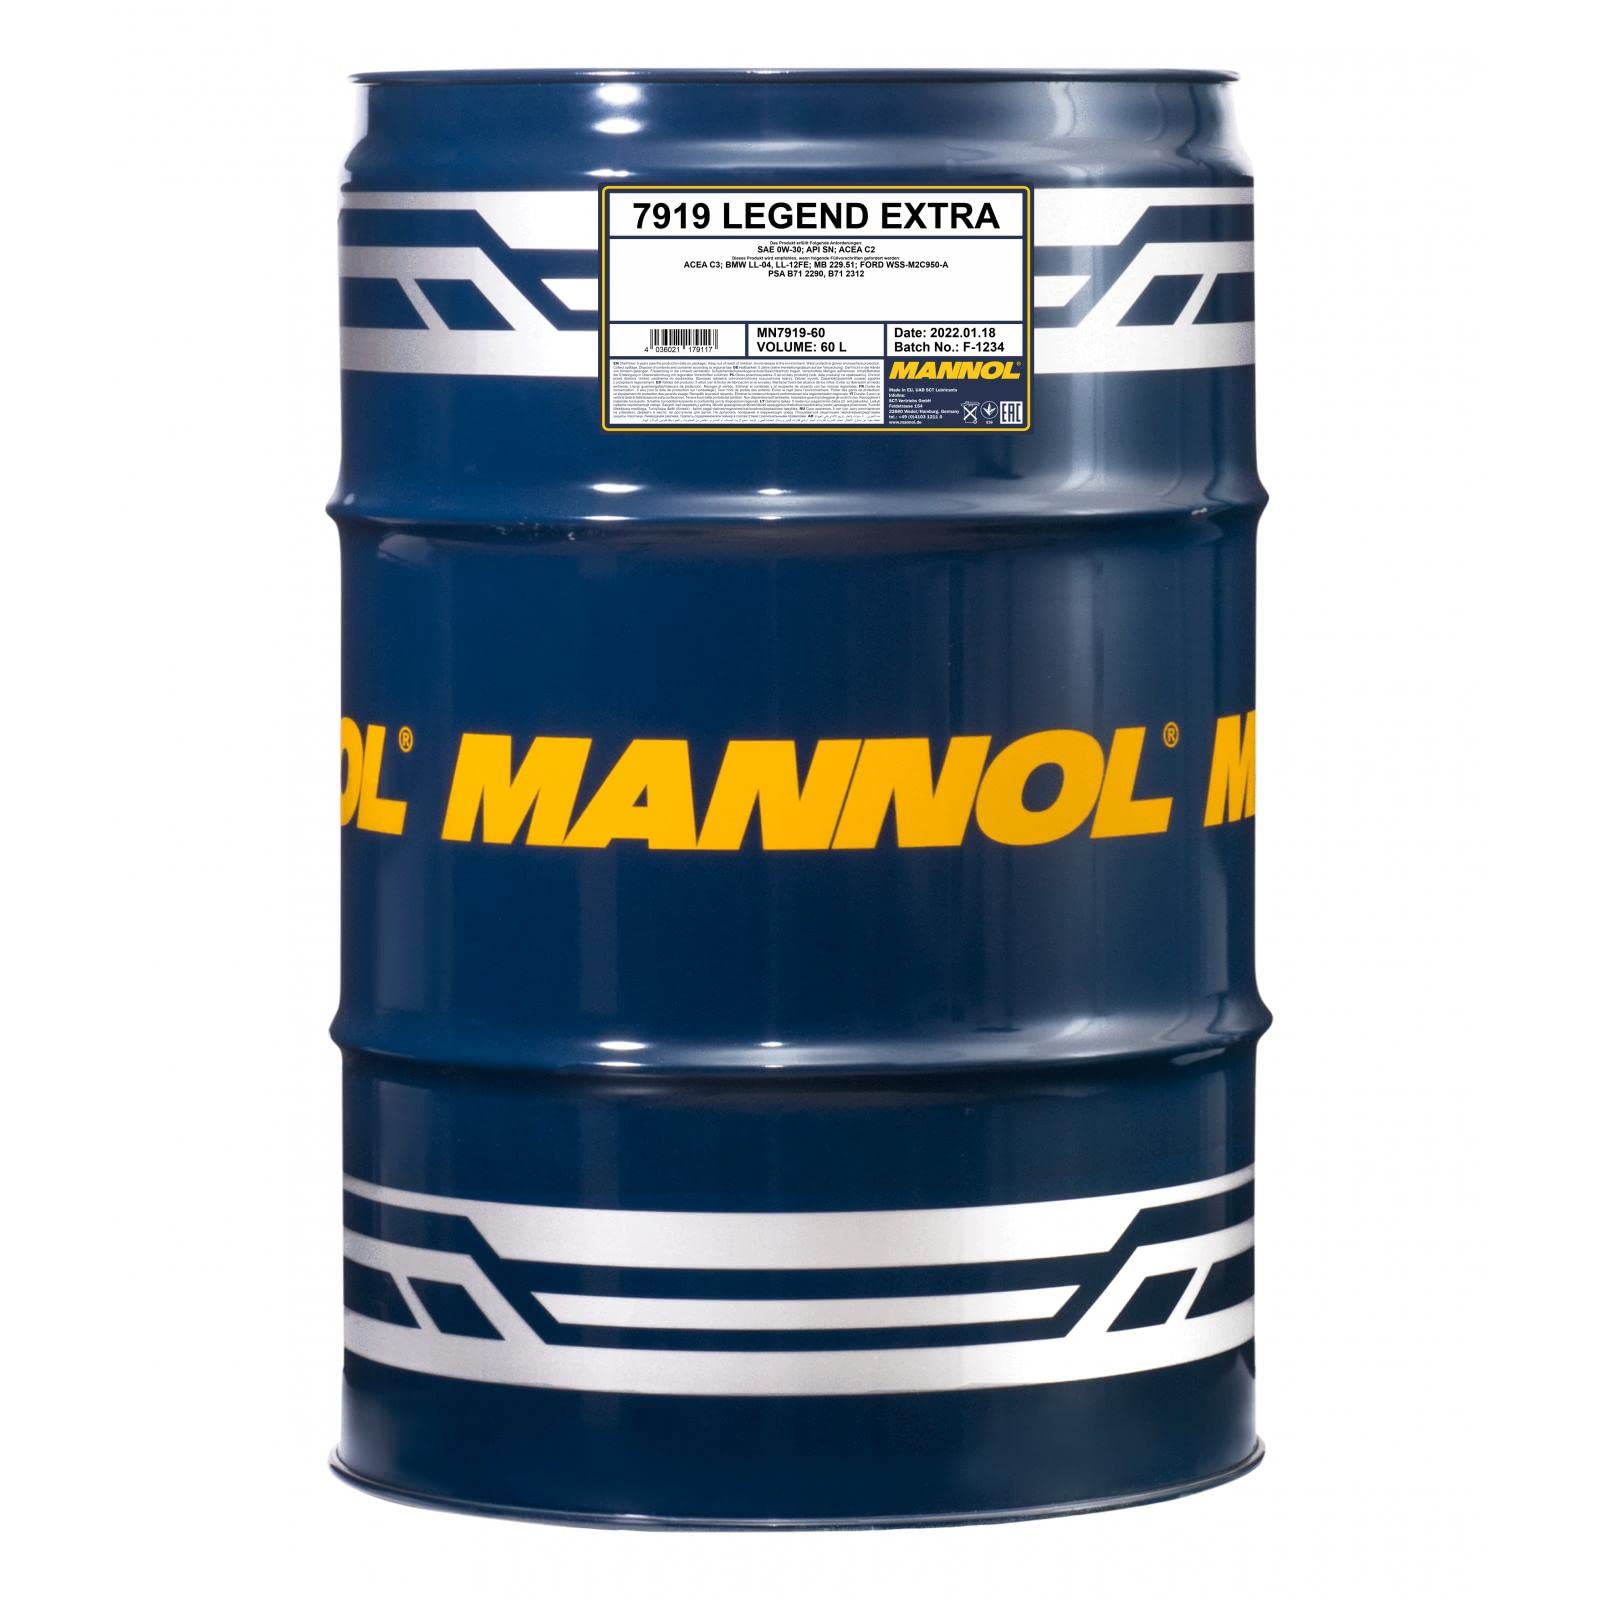 LEGEND EXTRA 60 Liter von MANNOL